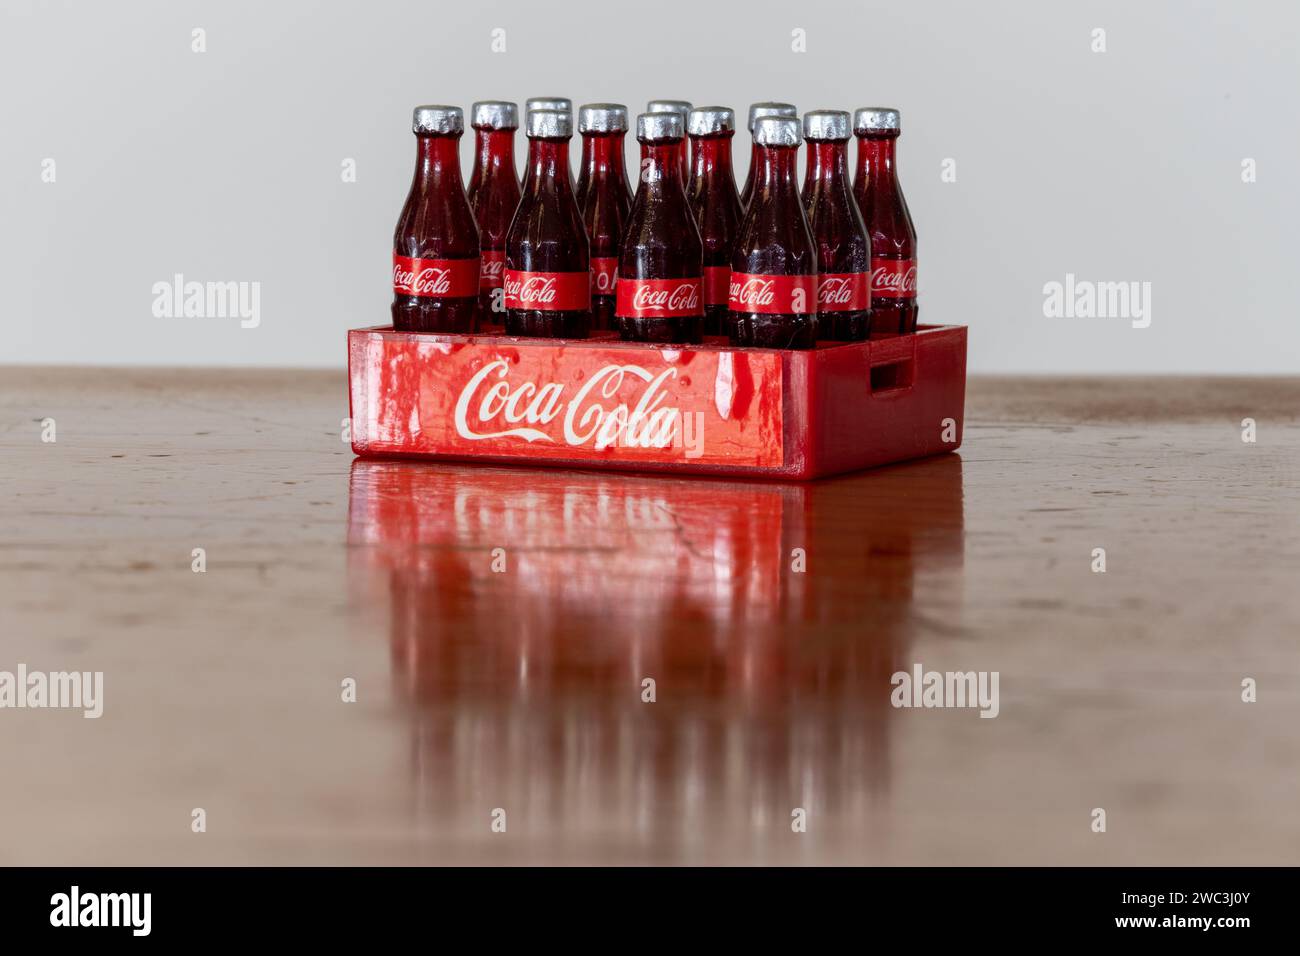 Bottle of Coca-Cola Stock Photo